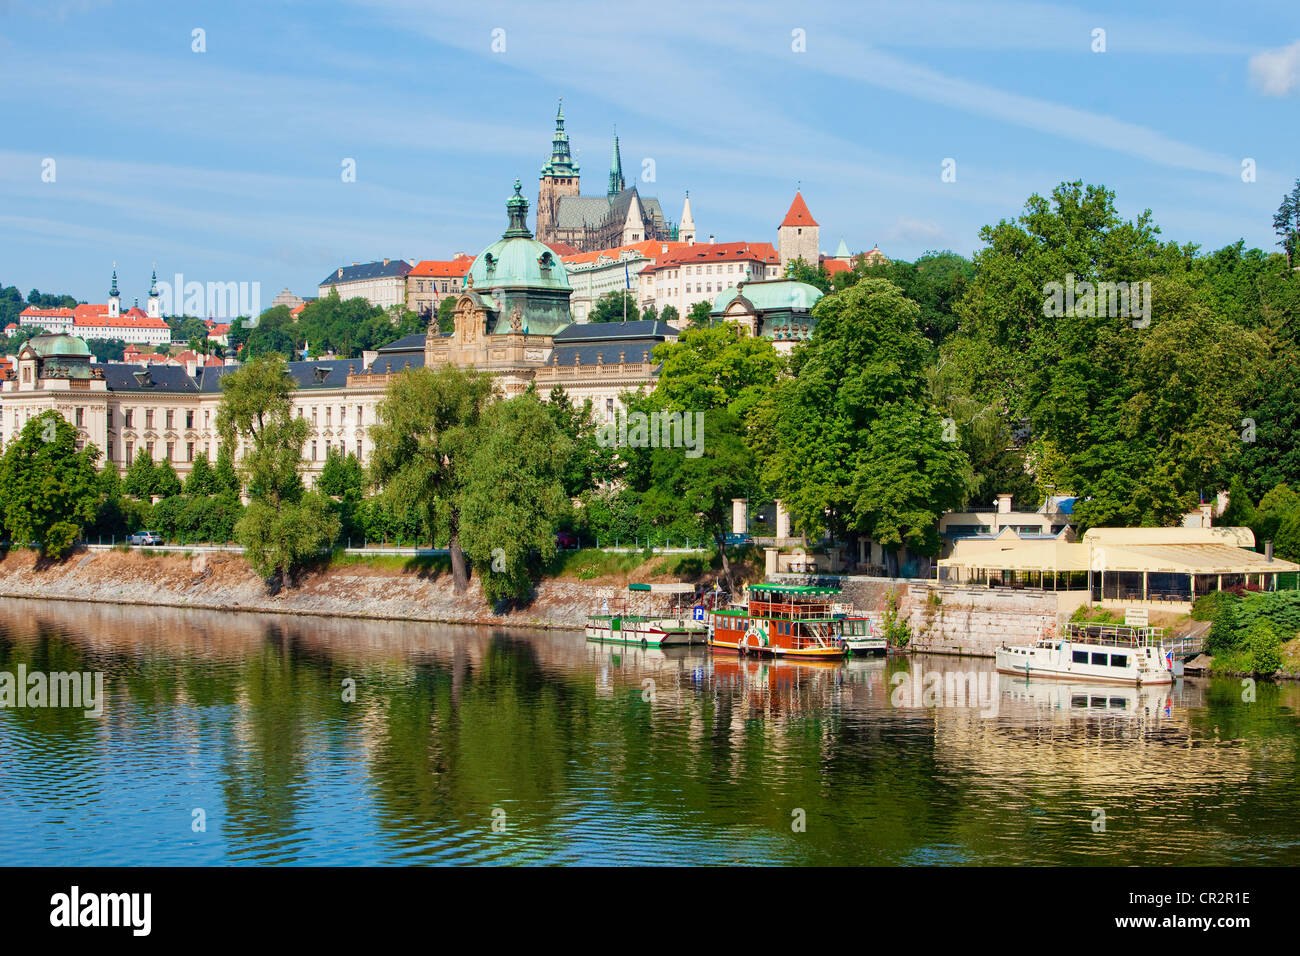 Tschechische Republik, Prag - Burg Hradschin, st.-Veits-Dom, Moldau Stockfoto